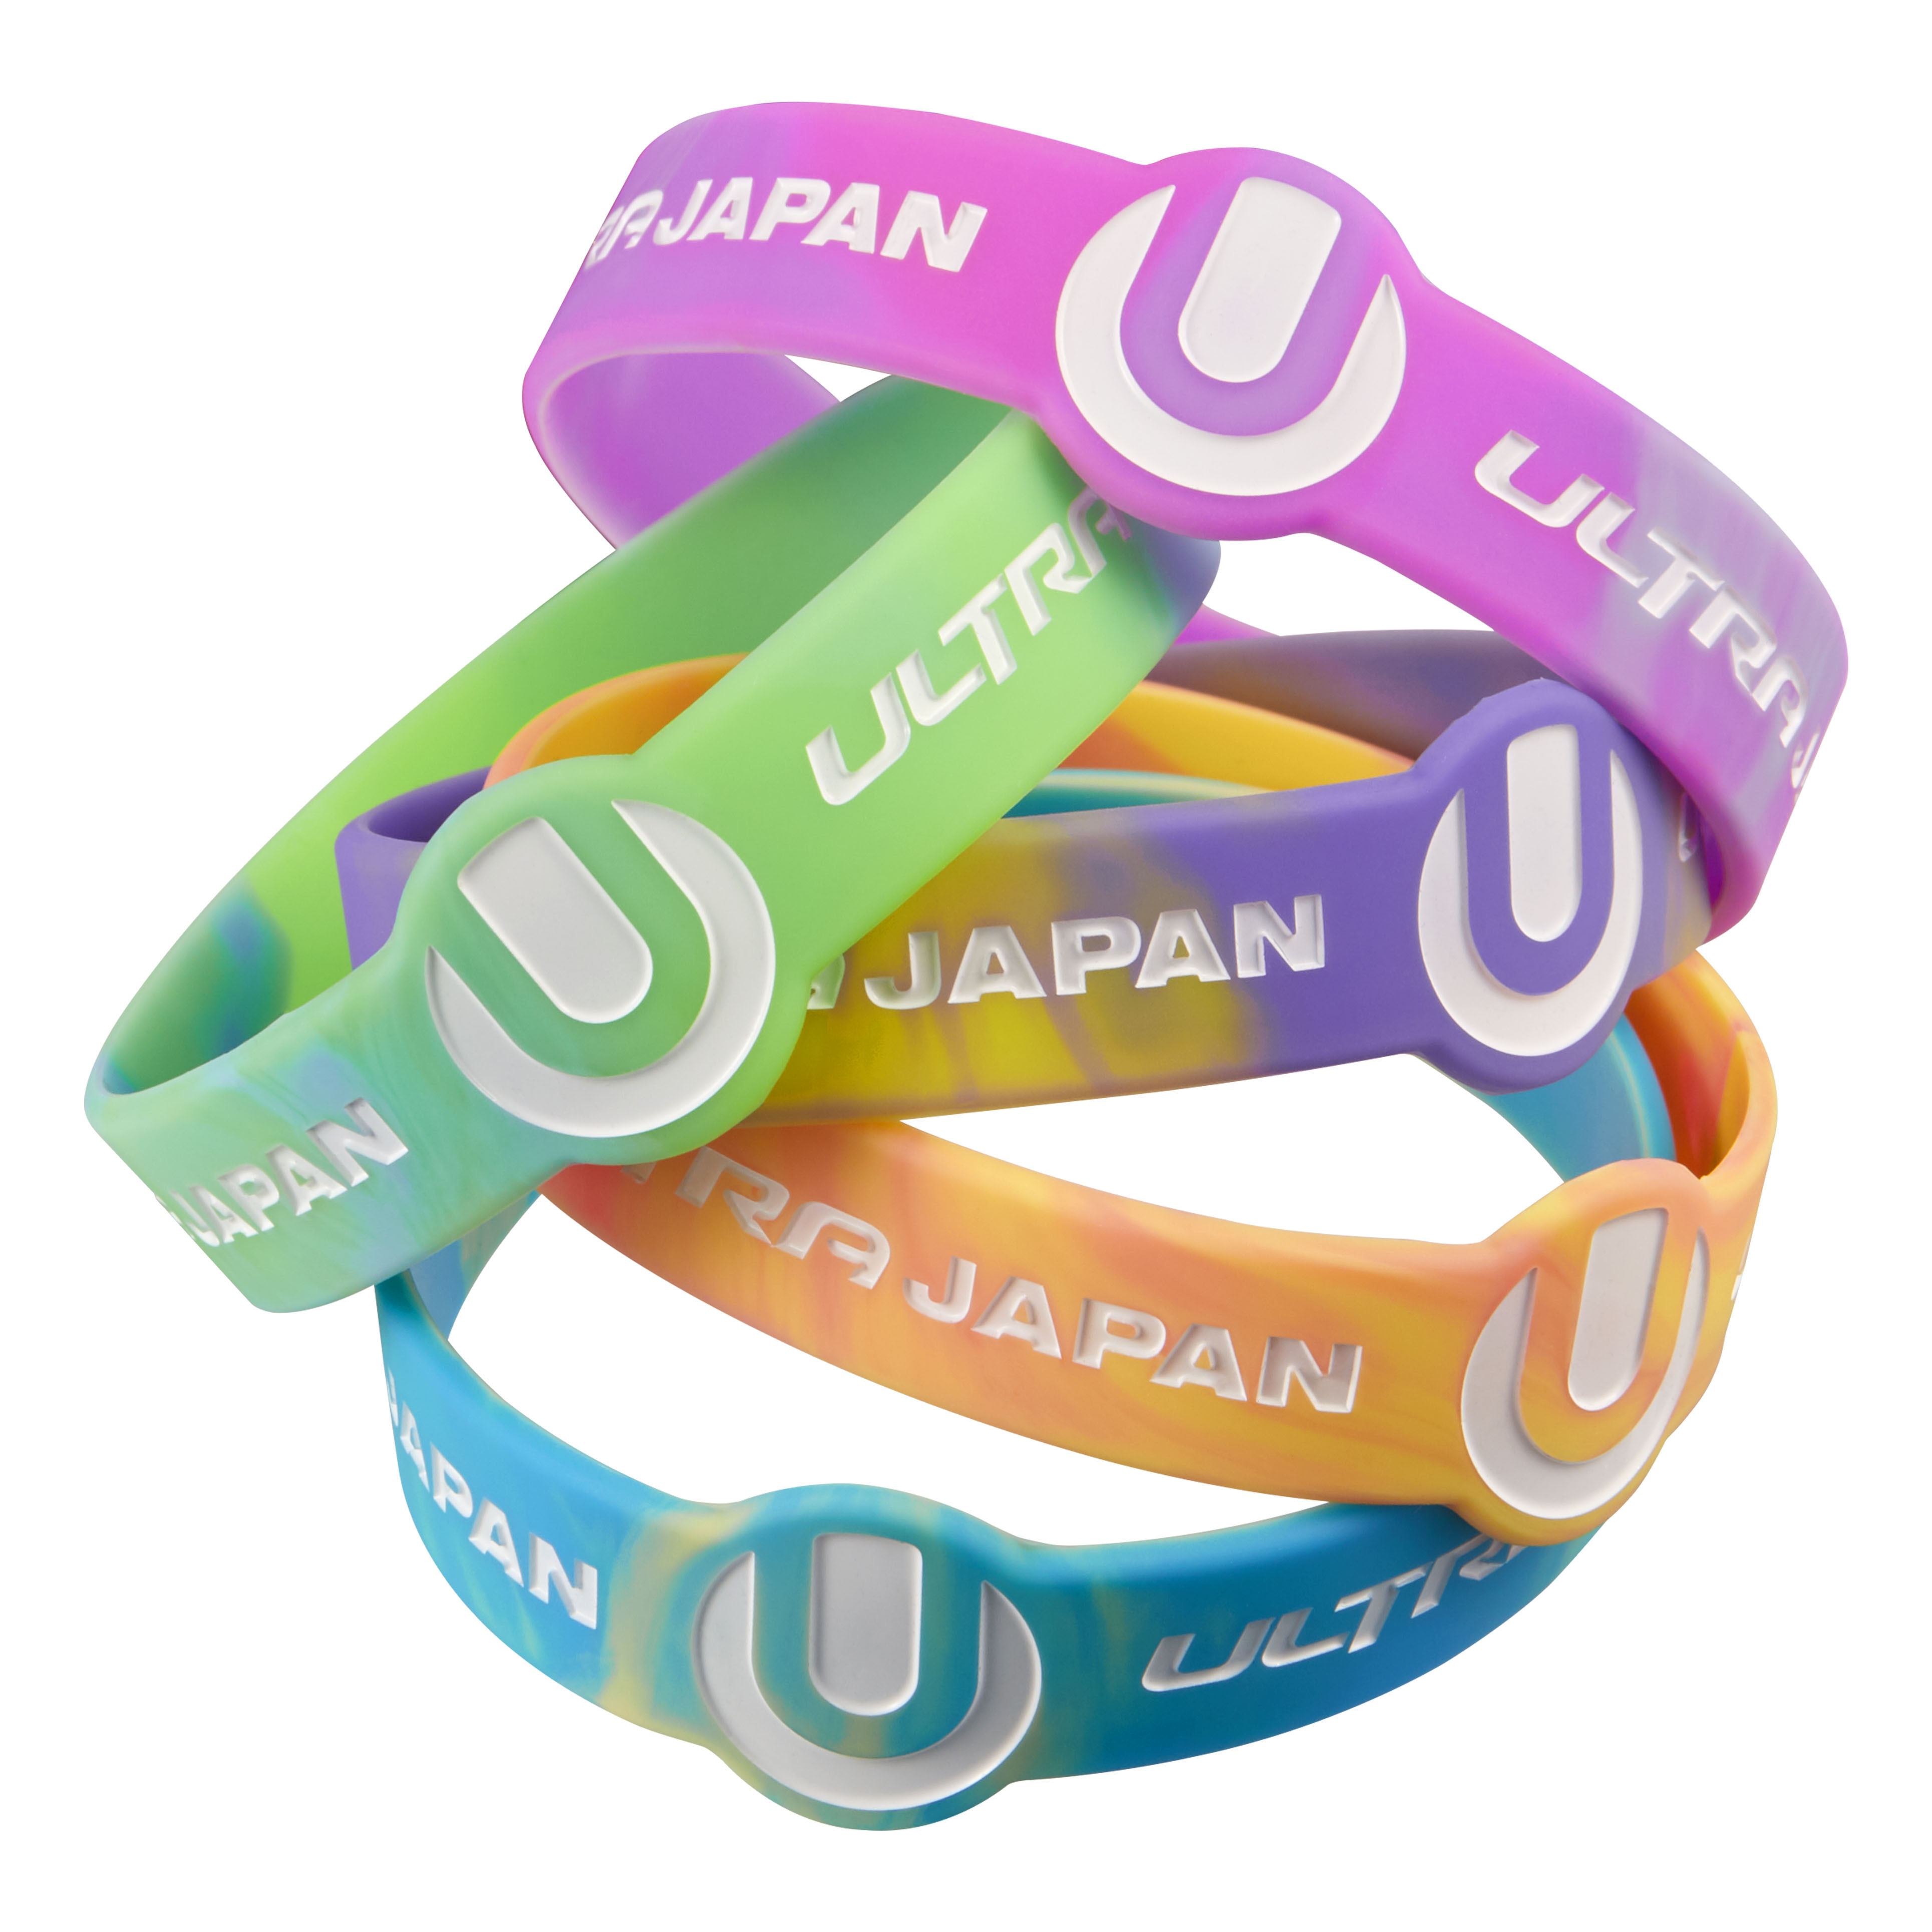 今年のフェスファッショントレンドは ネオン と メタリック Ultra Japan 19オフィシャルアイテム第一弾が遂に解禁 6月18日 火 12時よりmu Moショップにて発売開始 Ultra Japan 19 実行委員会のプレスリリース